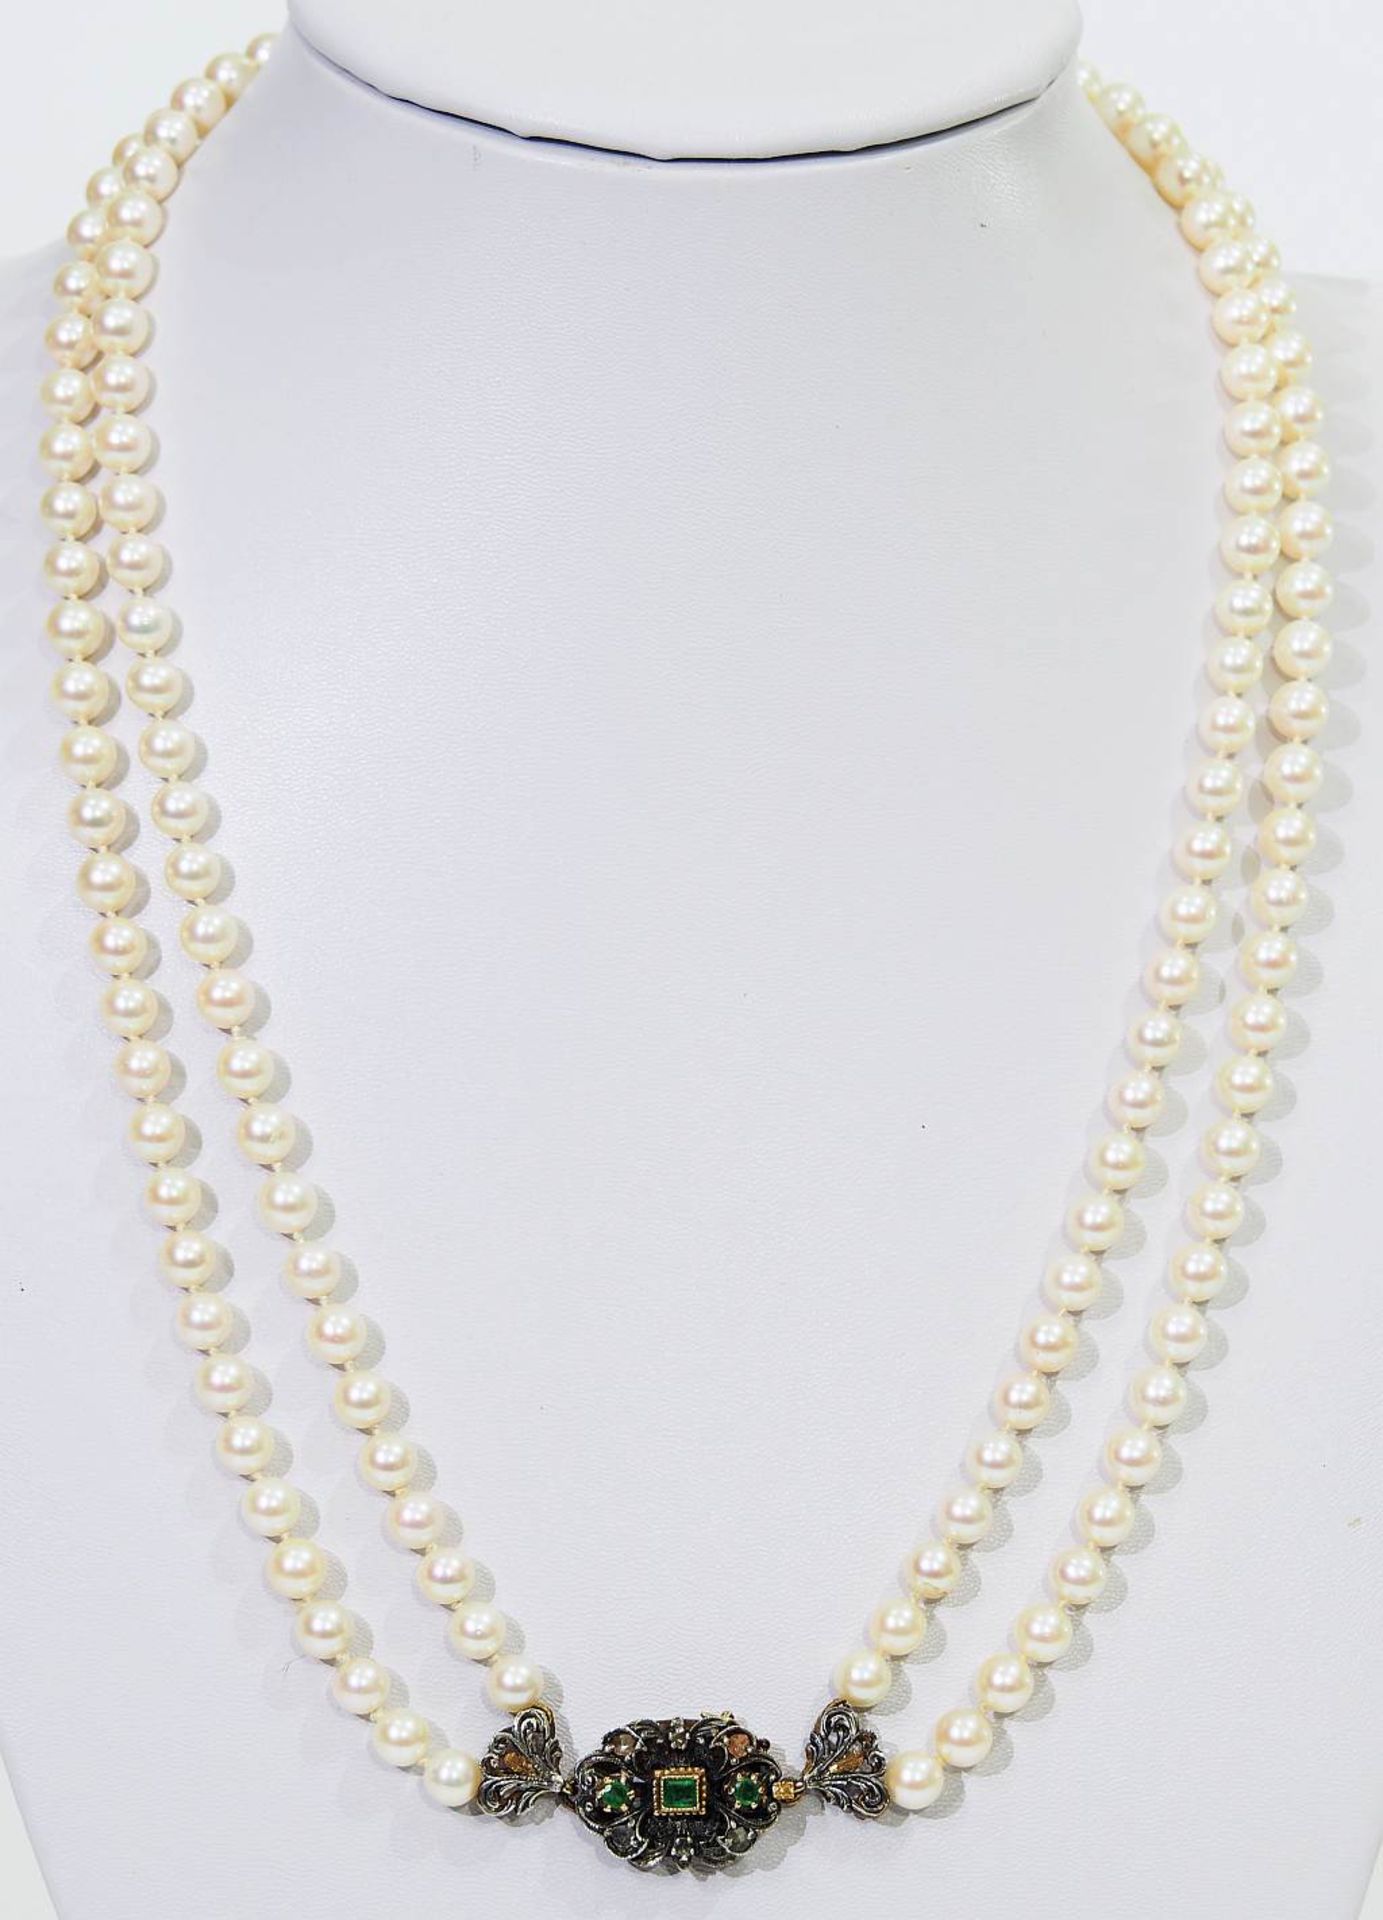 Zweireihige Perlenkette, mit dekorativem Verschluss. Zweireihige Perlenkette, mit dekorativem - Bild 2 aus 6